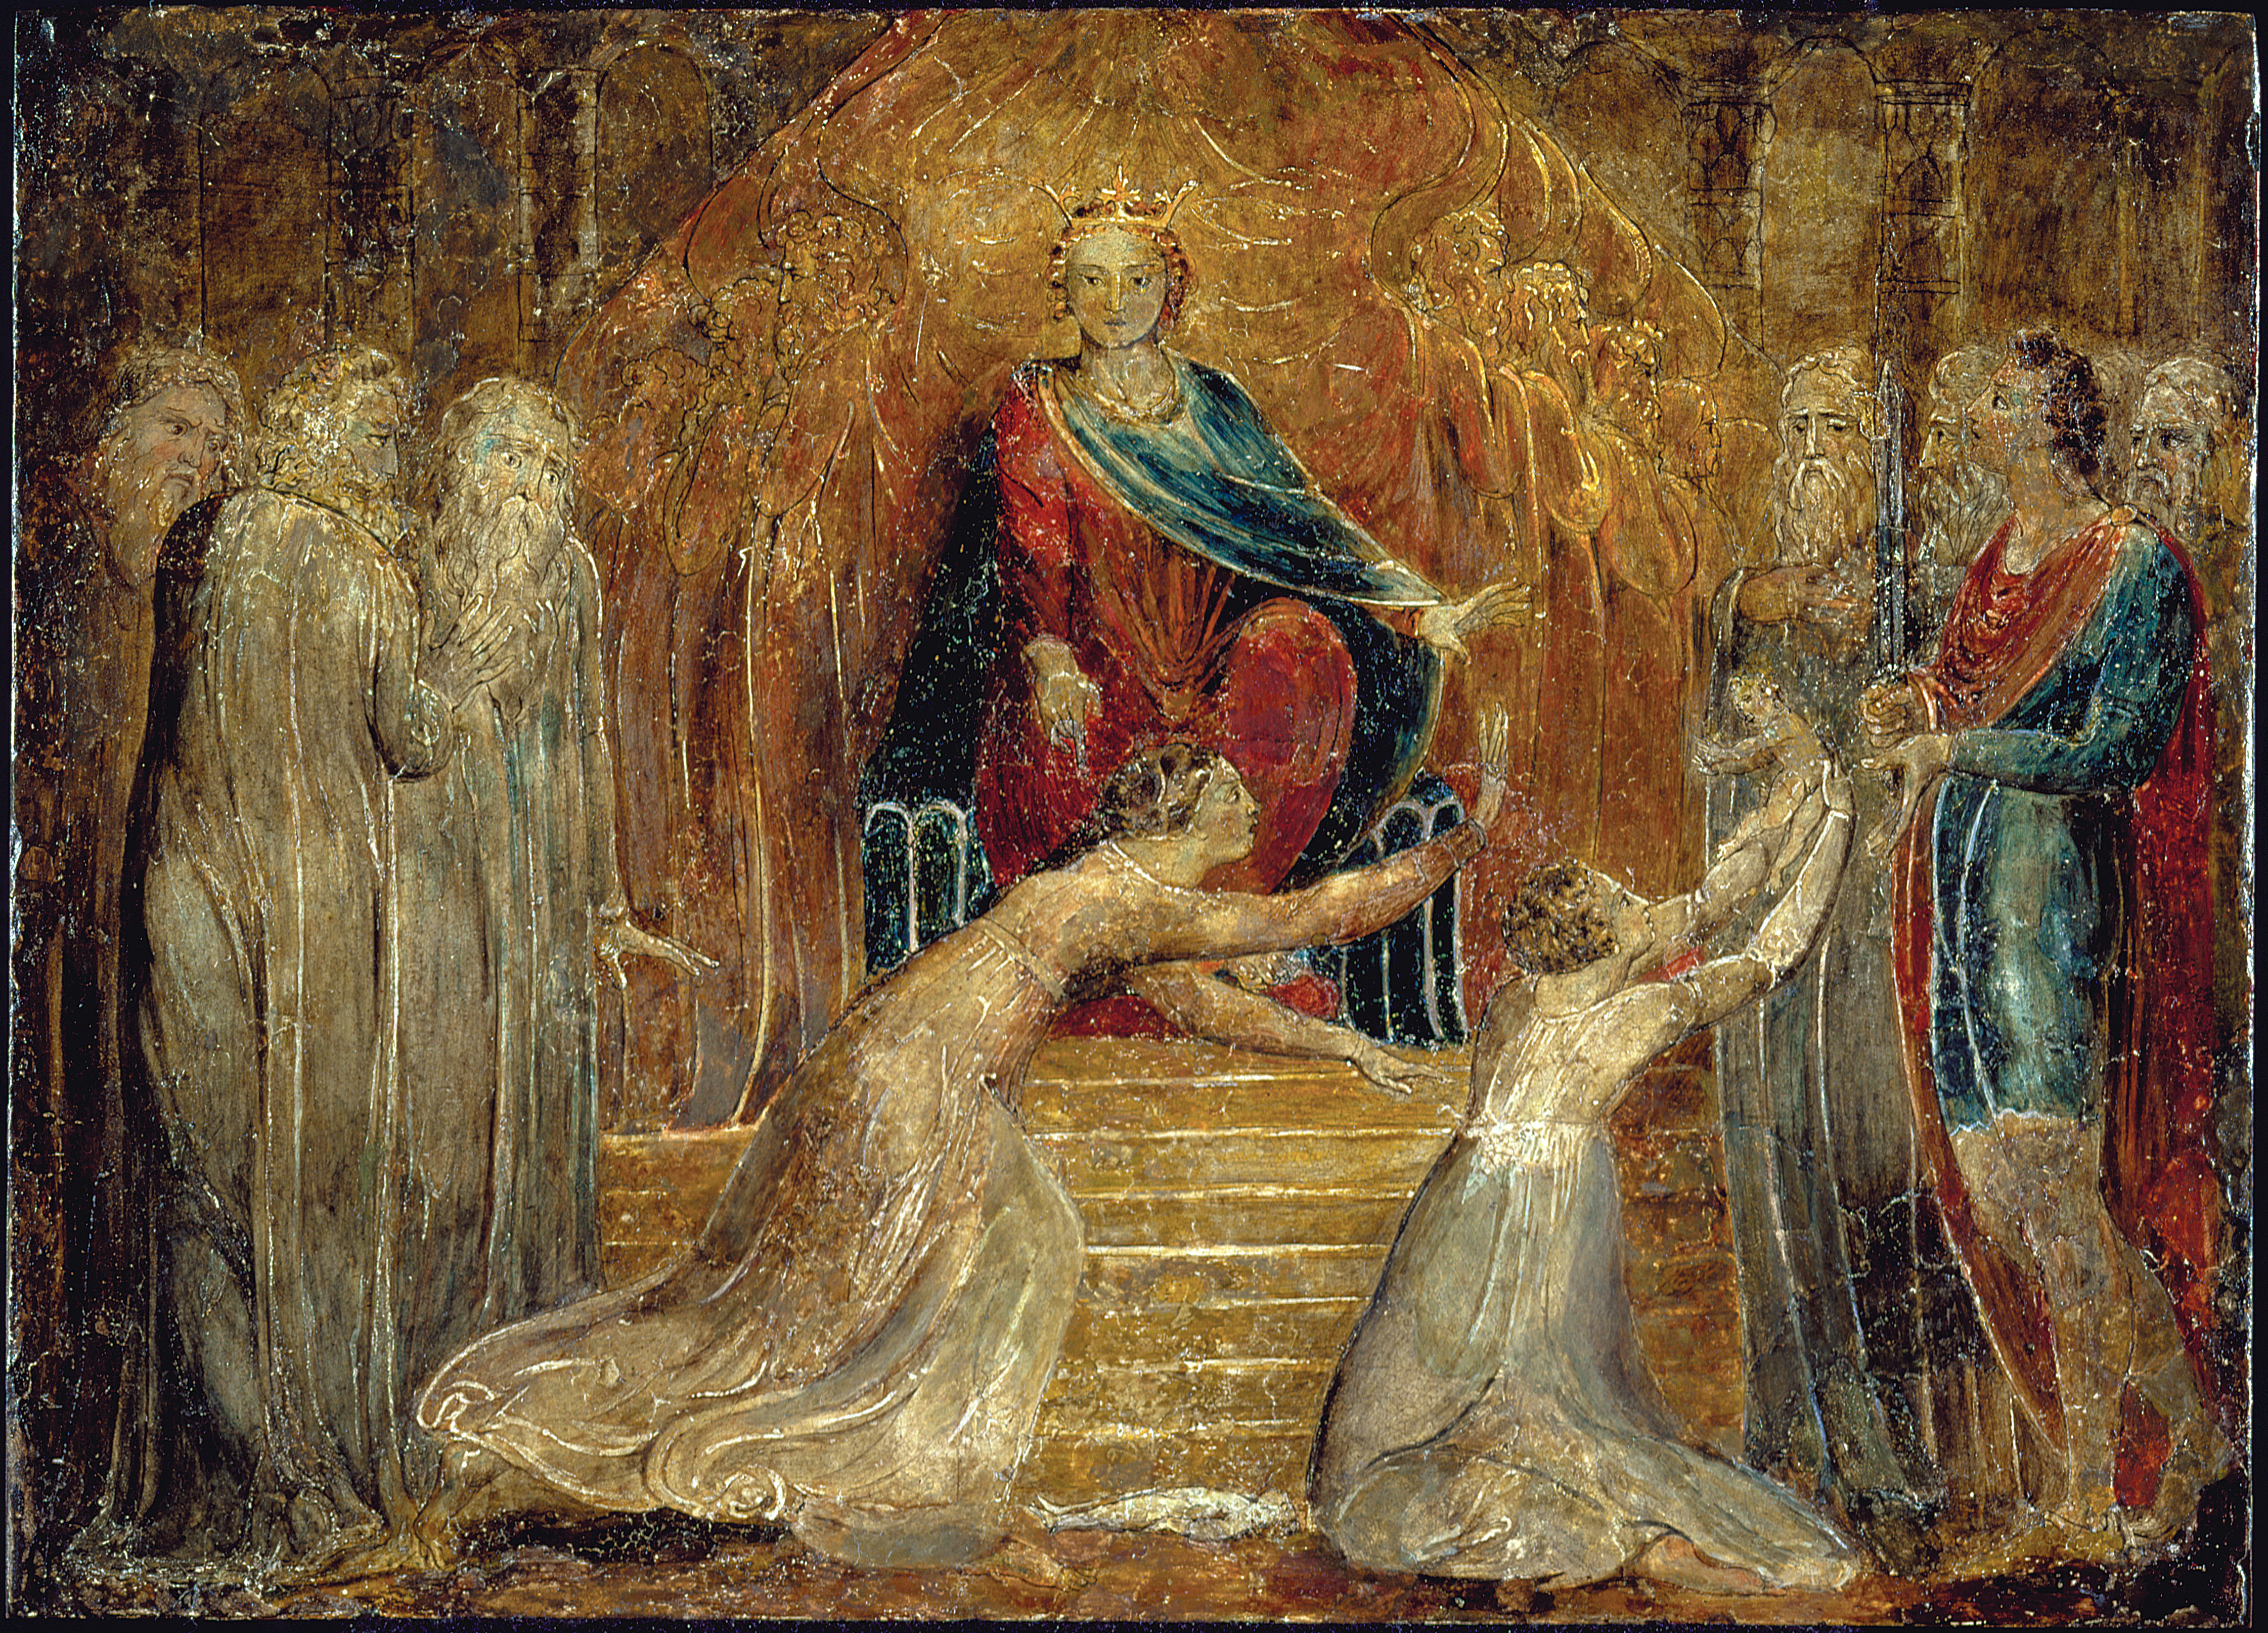 William Blake - The Judgment of Solomon